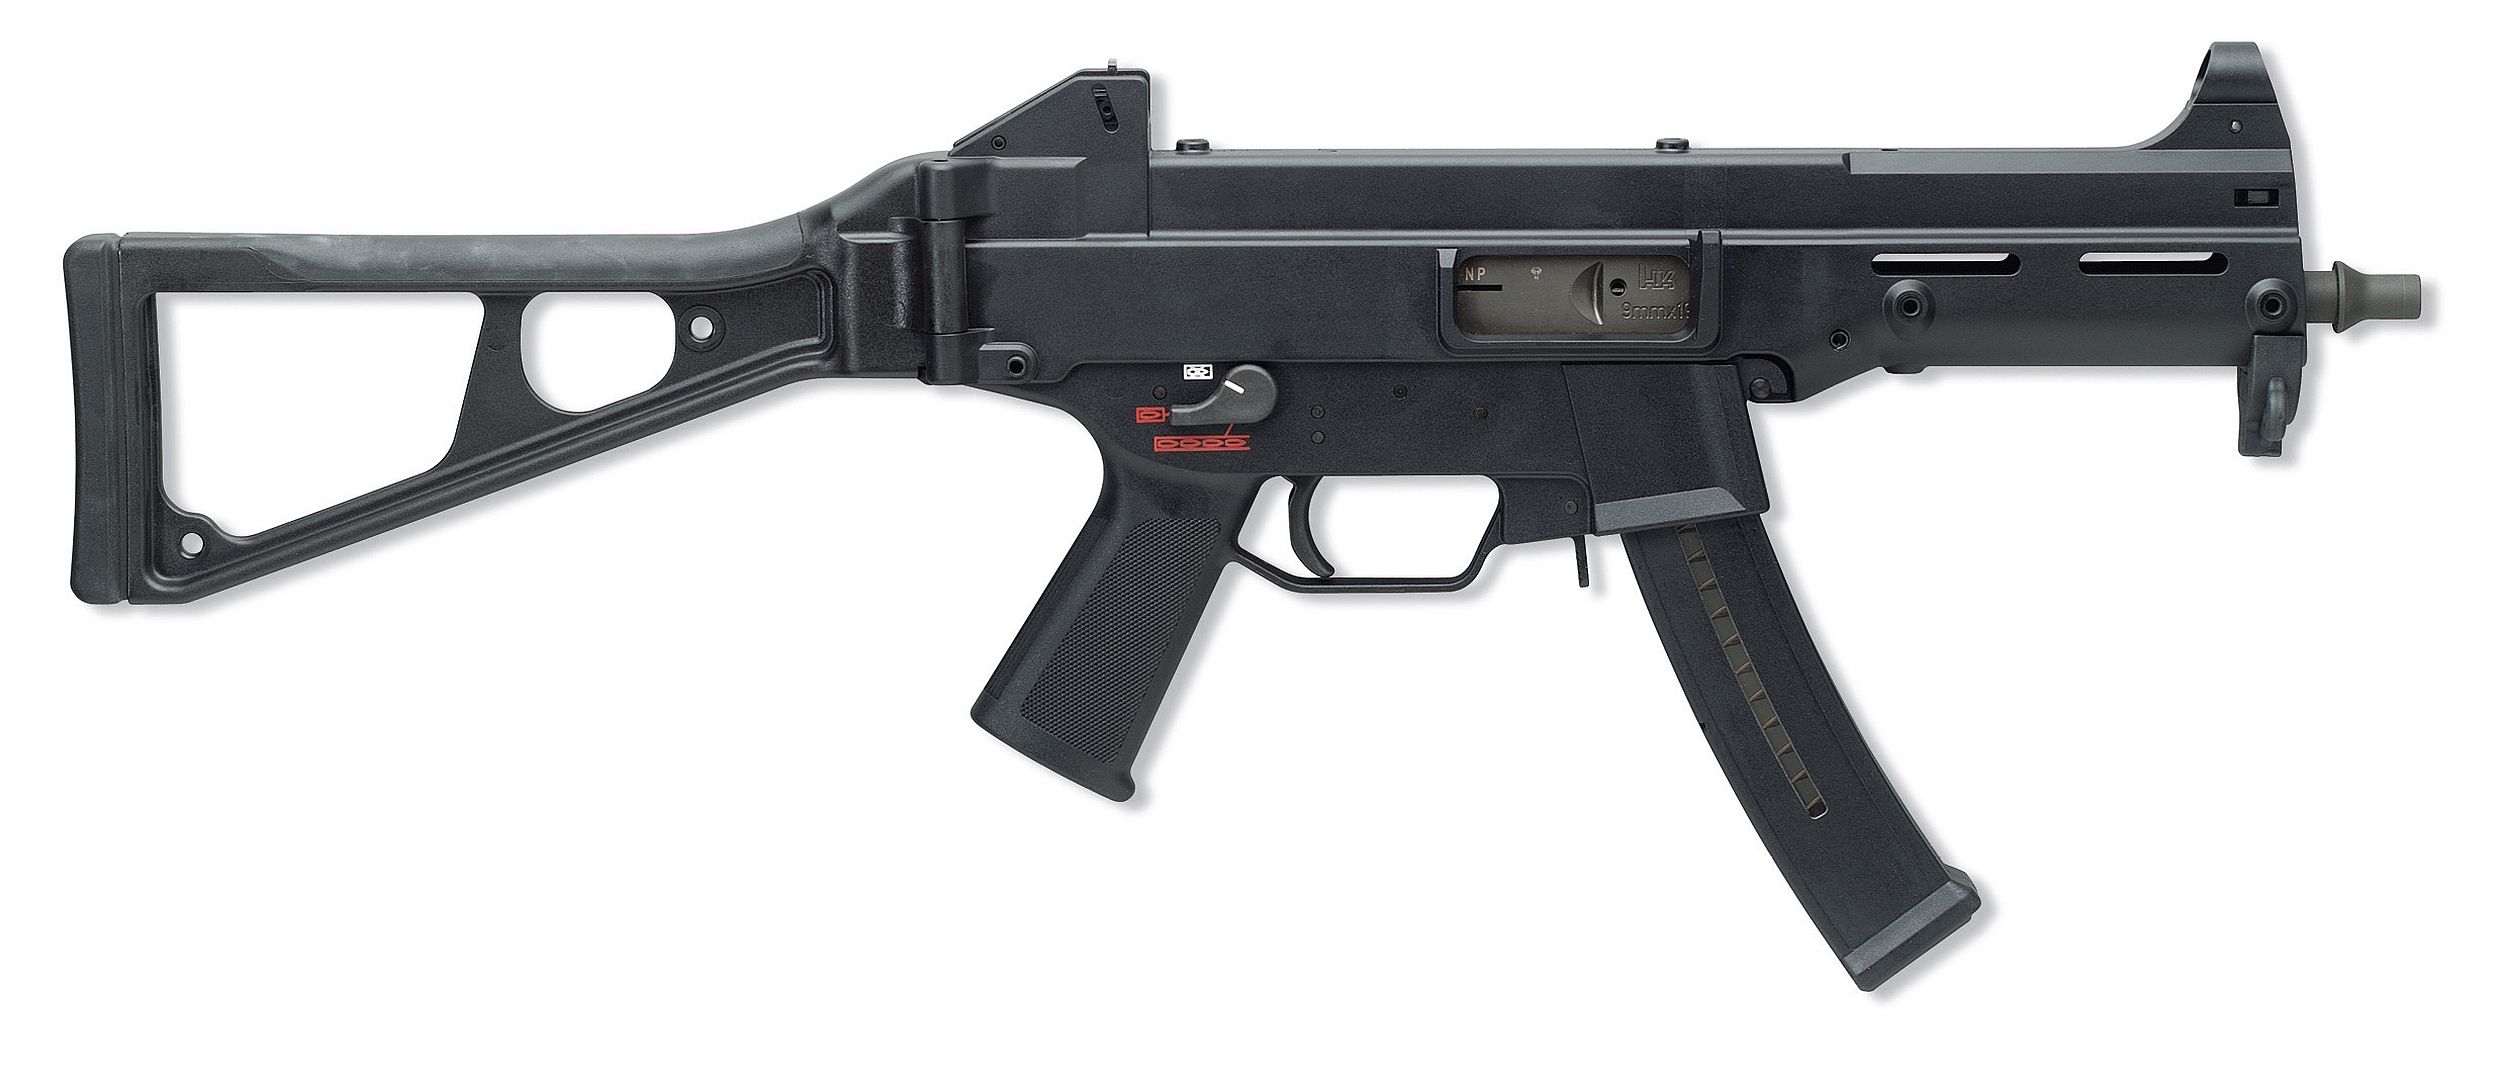 Magazinespeedloader On Hecker Koch Guns Submachine Gun